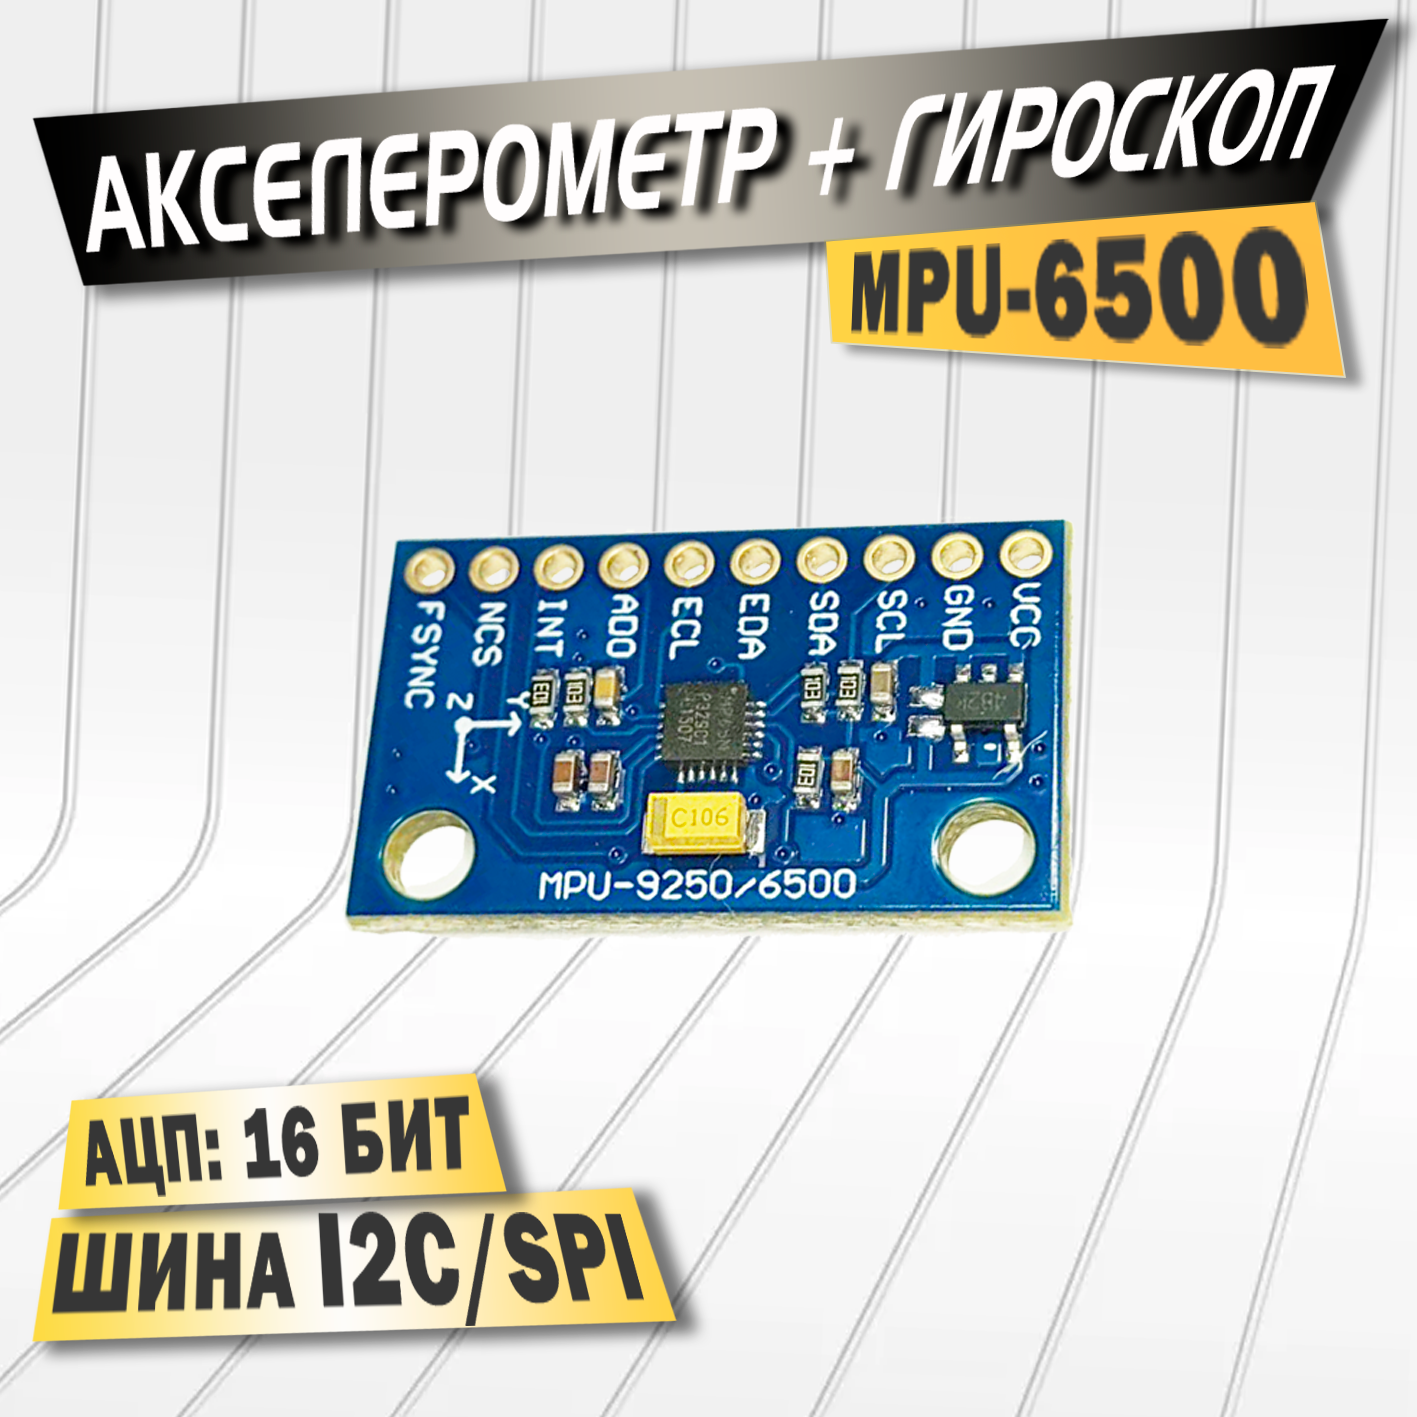 Акселерометр + гироскоп MPU-6500, 3.3-5В, система MEMS